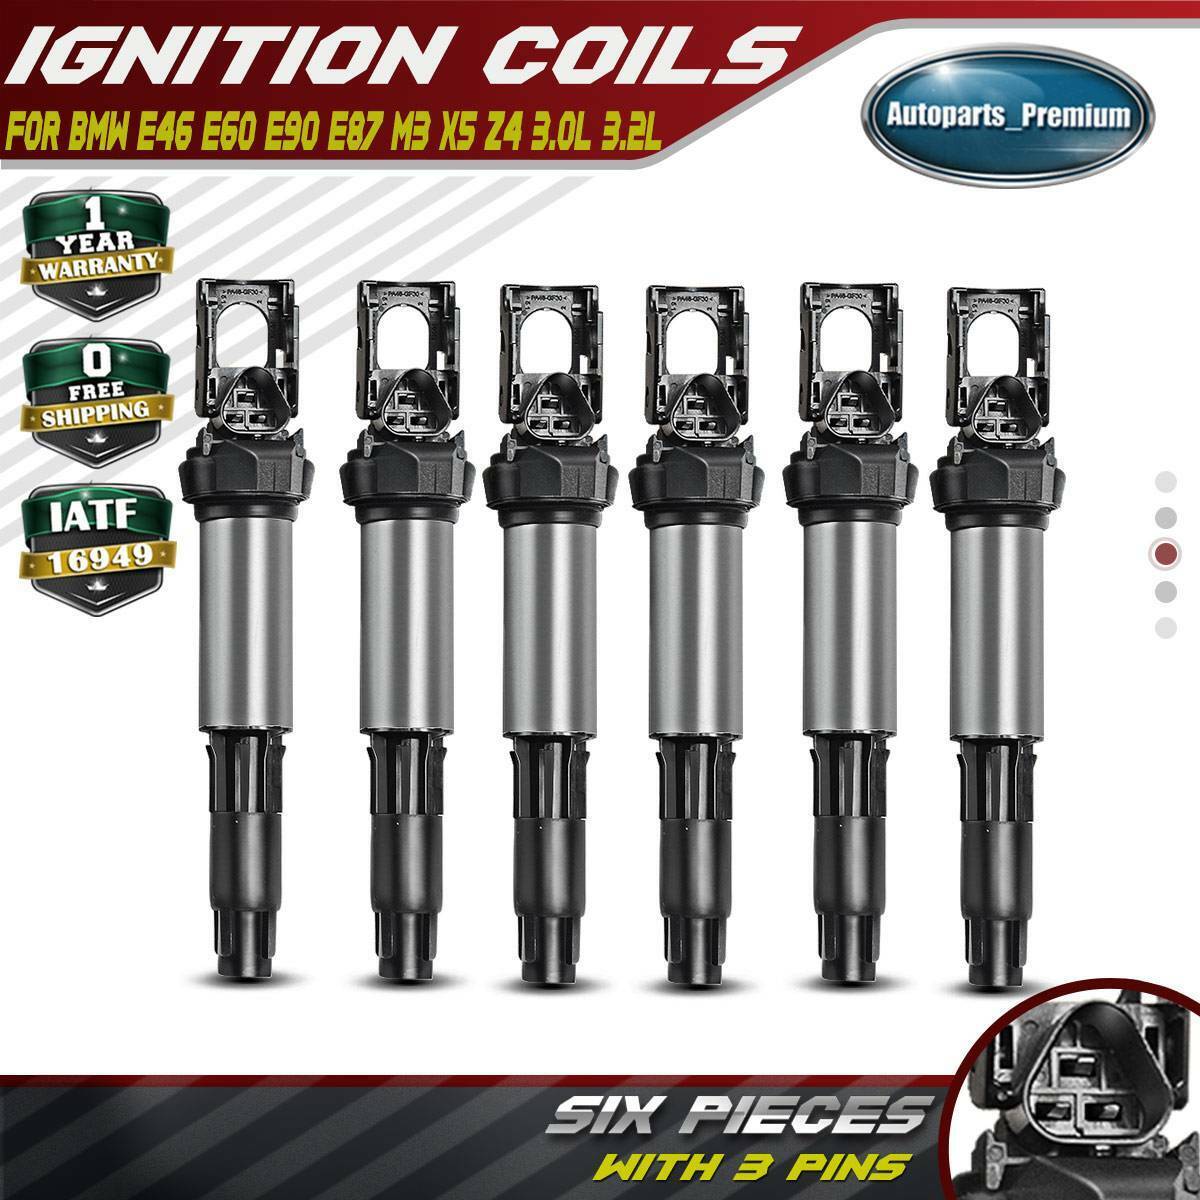 6PCS Ignition Coils for BMW E46 E83 E90 325i 335i 525i 530i X3 X5 12131712219